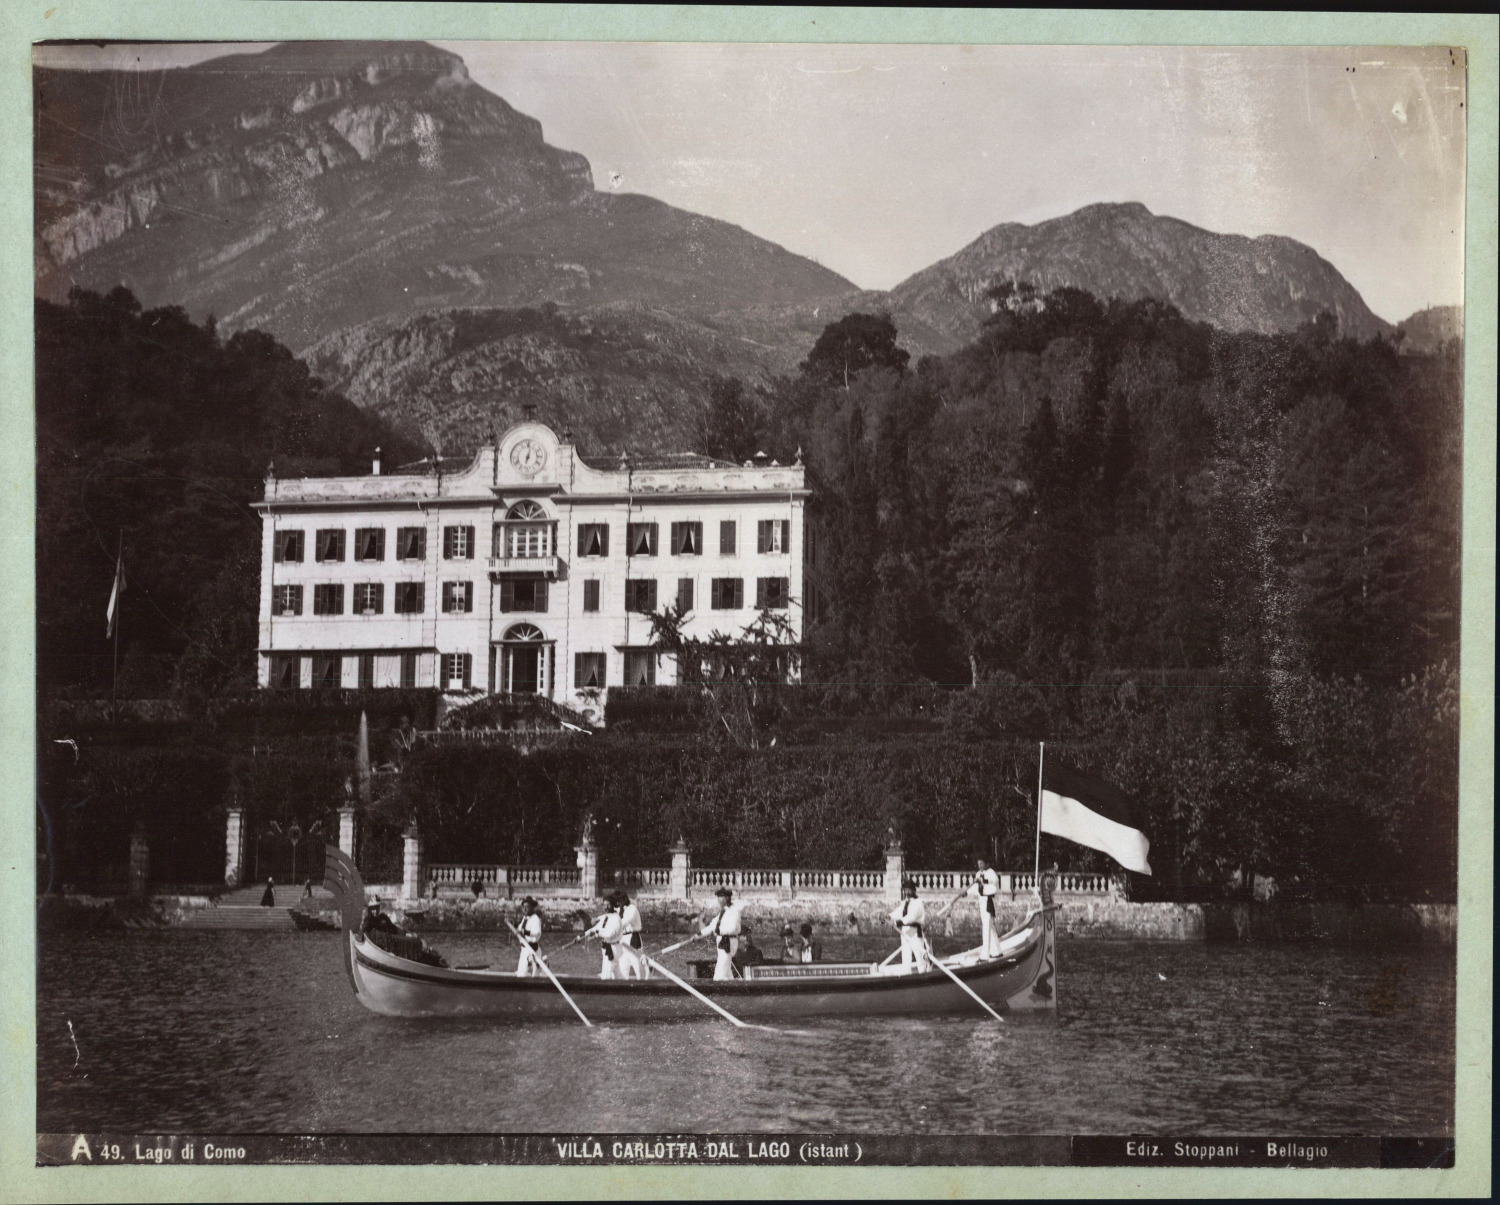 Italy, Lake Como, Villa Carlotta, ca.1880, vintage print vintage print vintage print, light